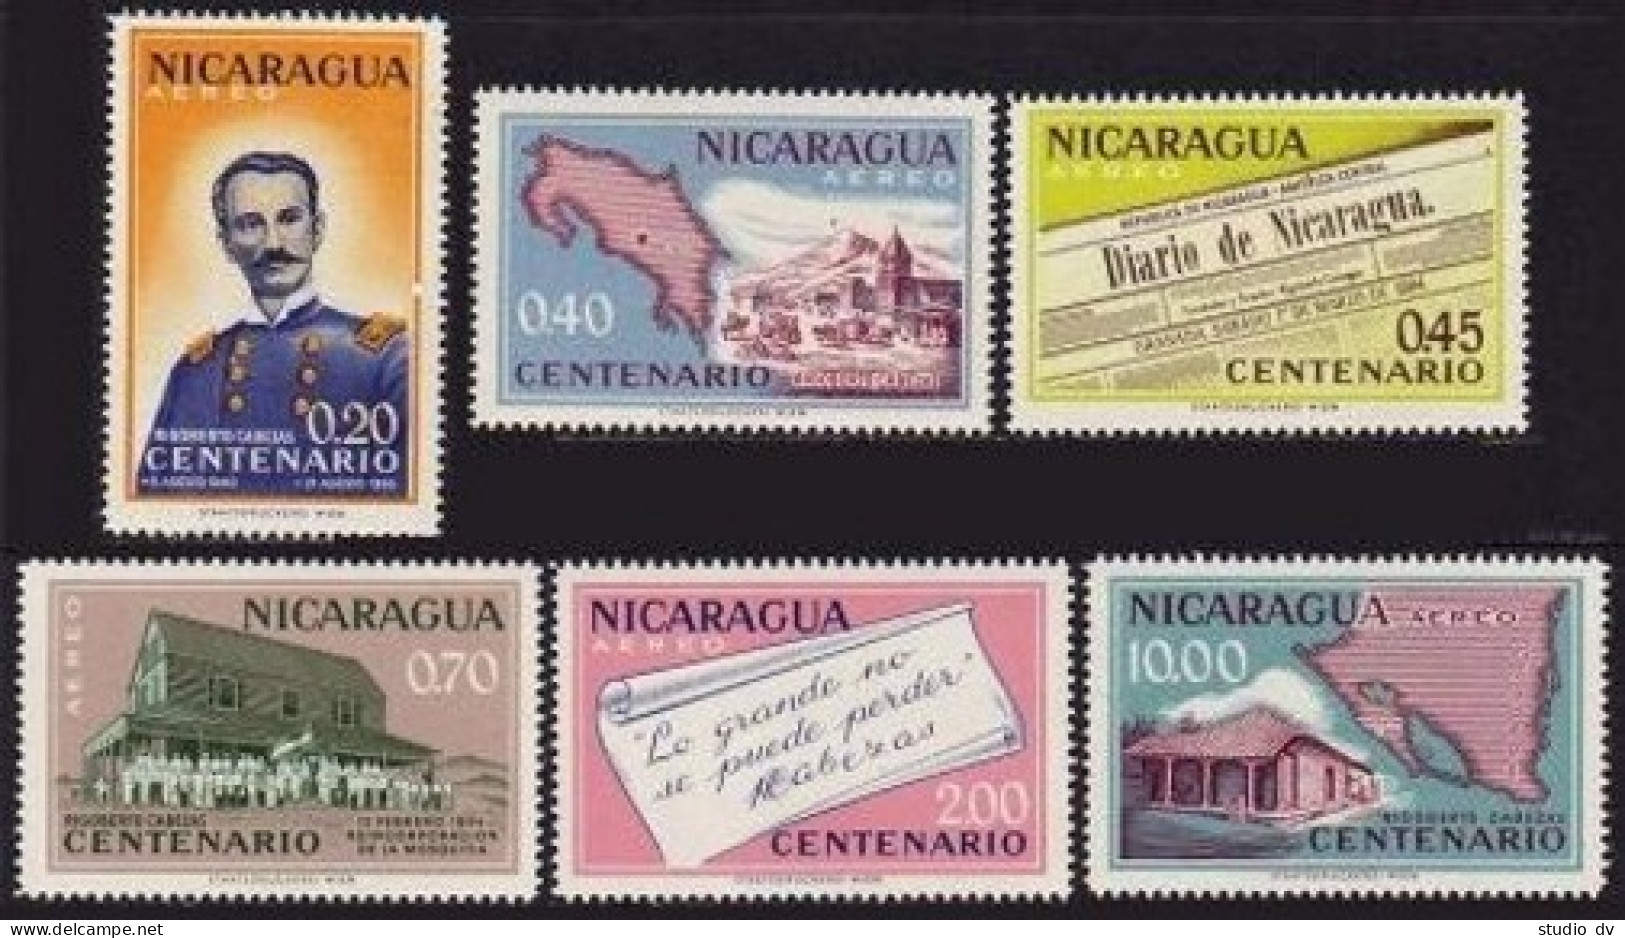 Nicaragua C487-C492, MNH. Michel 1296-1301. Rigoberto Cabezas-100, 1961. Map - Nicaragua